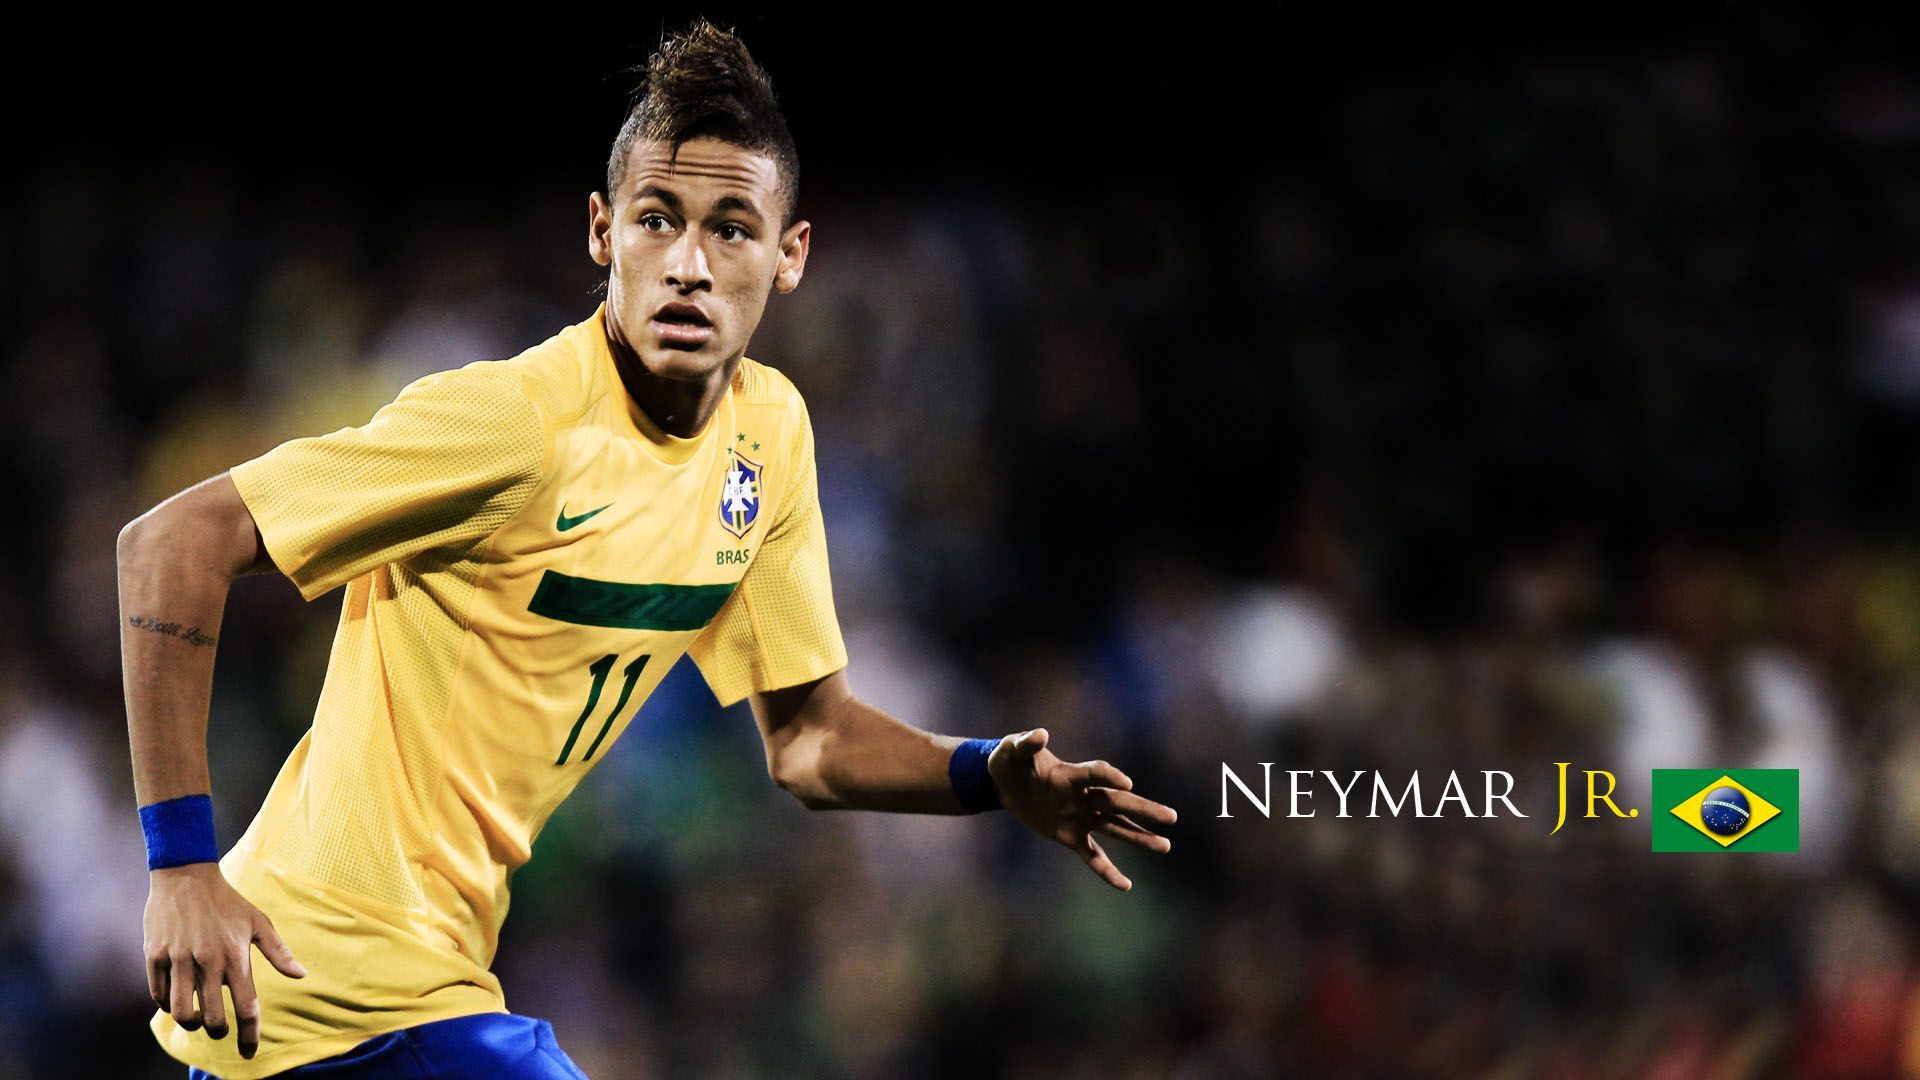 Neymar Brazil Scoring Wallpaper Widescreen High